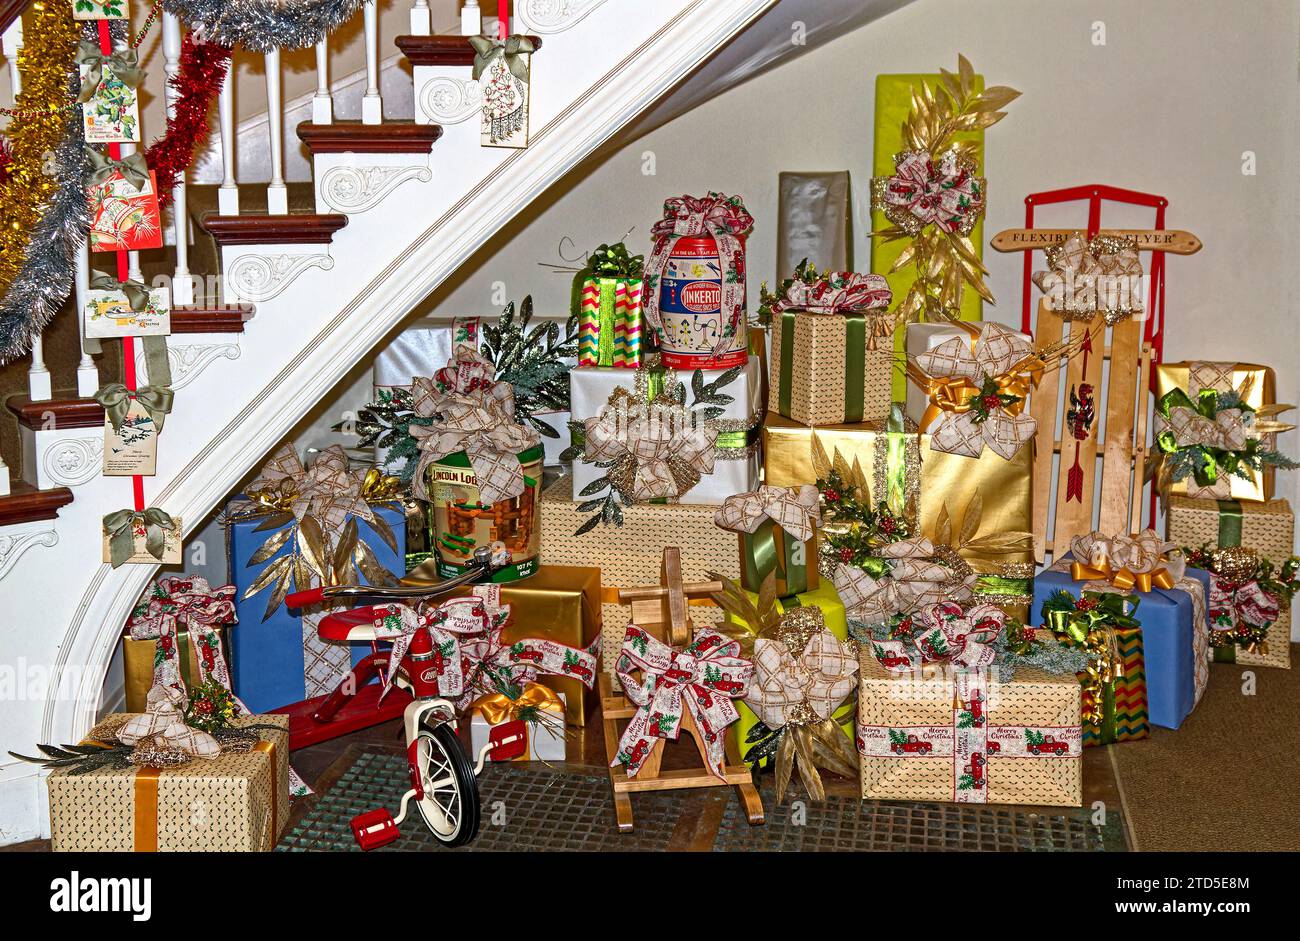 Cadeaux de Noël ; festive ; donner ; vacances ; cadeaux, sous l'escalier incurvé, emballages colorés, arcs, tricycle, cheval à bascule en bois, traîneau flexible Flyer Banque D'Images